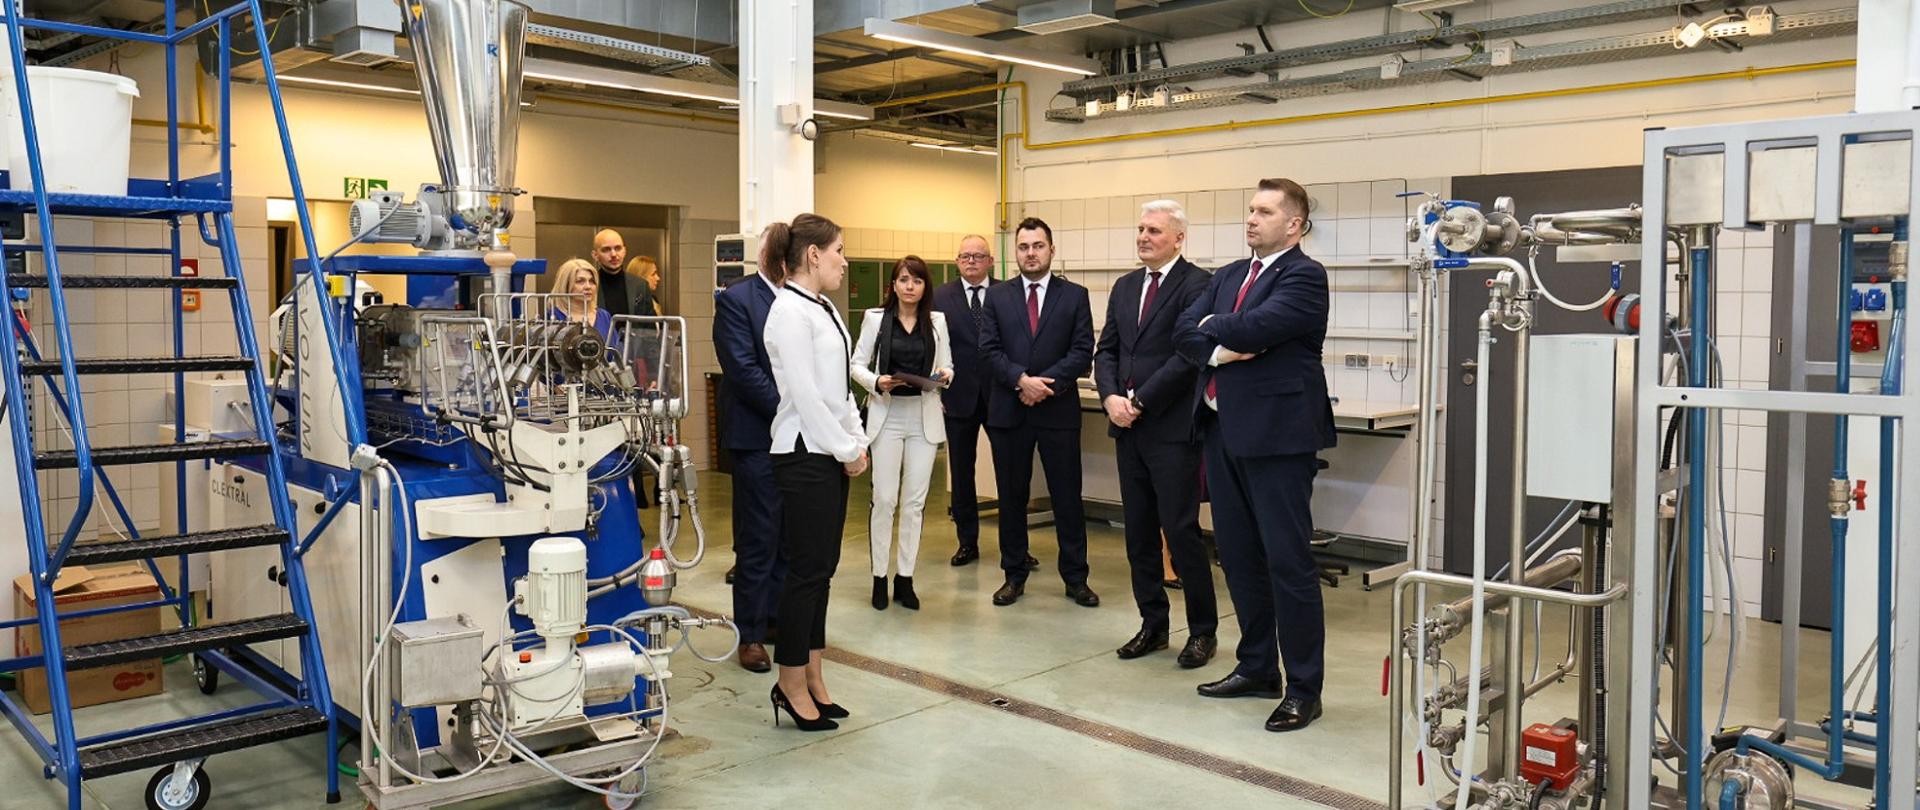 Minister Czarnek, kobieta w białej bluzce i kilkoro innych osób stoją na podłodze dużej hali, obok nich stoją różne skomplikowane urządzenia.